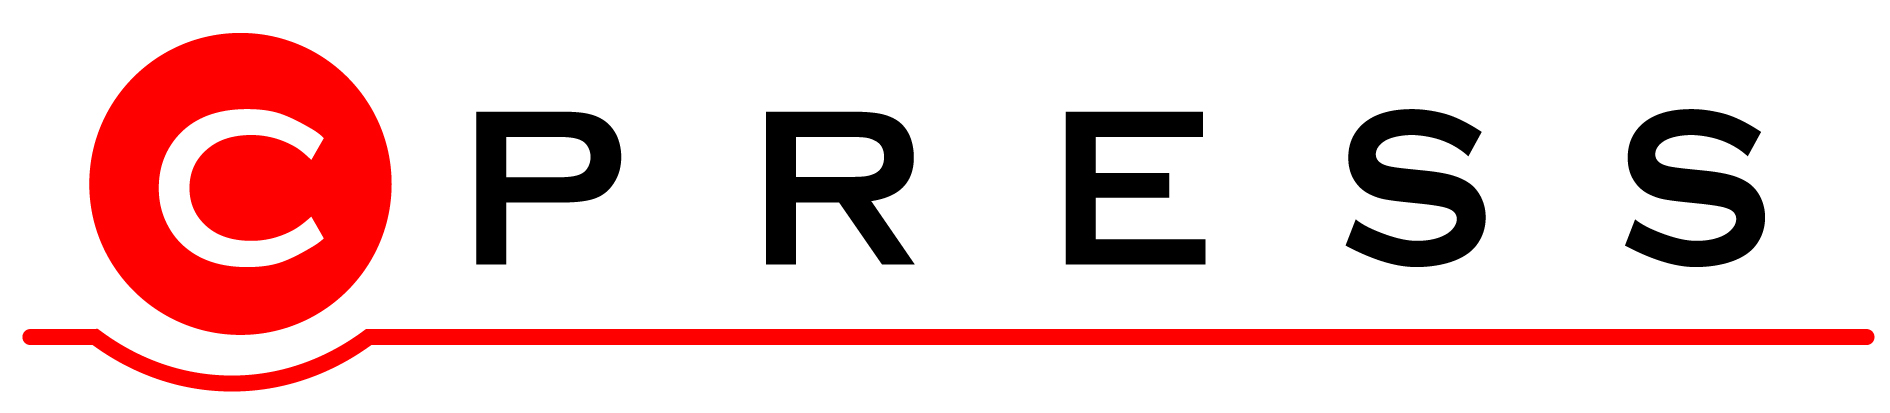 logo CPress v jpg